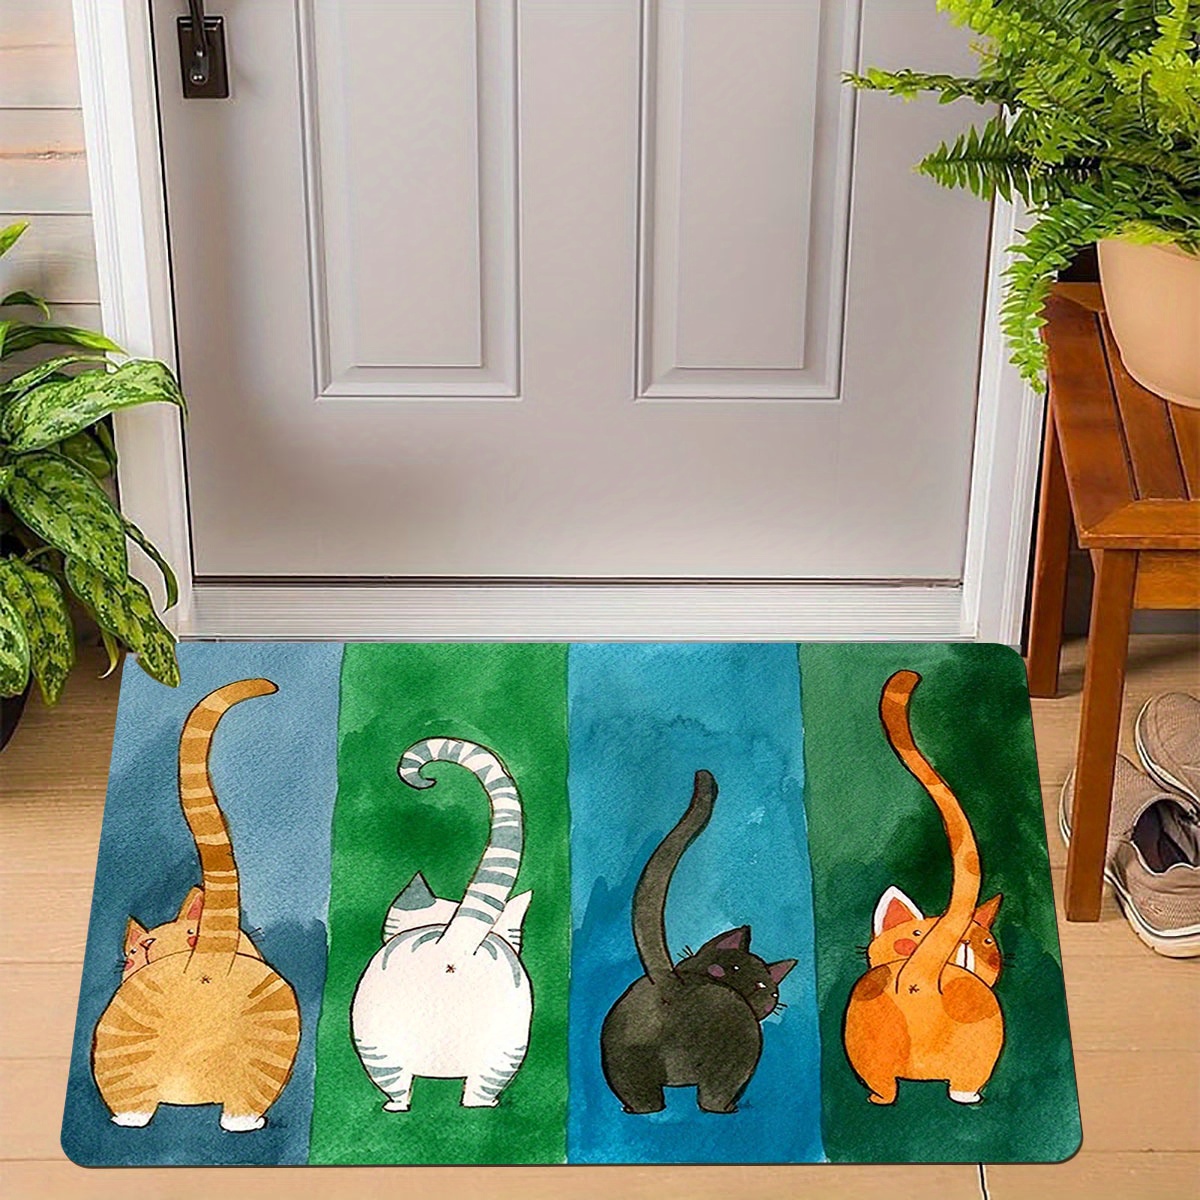 

1pc, Welcome Mats For Front Door Mat, Indoor Funny Cat Doormat, Home Floor Mats Non Slip Carpet For Bathroom Kitchen Bedroom Decor